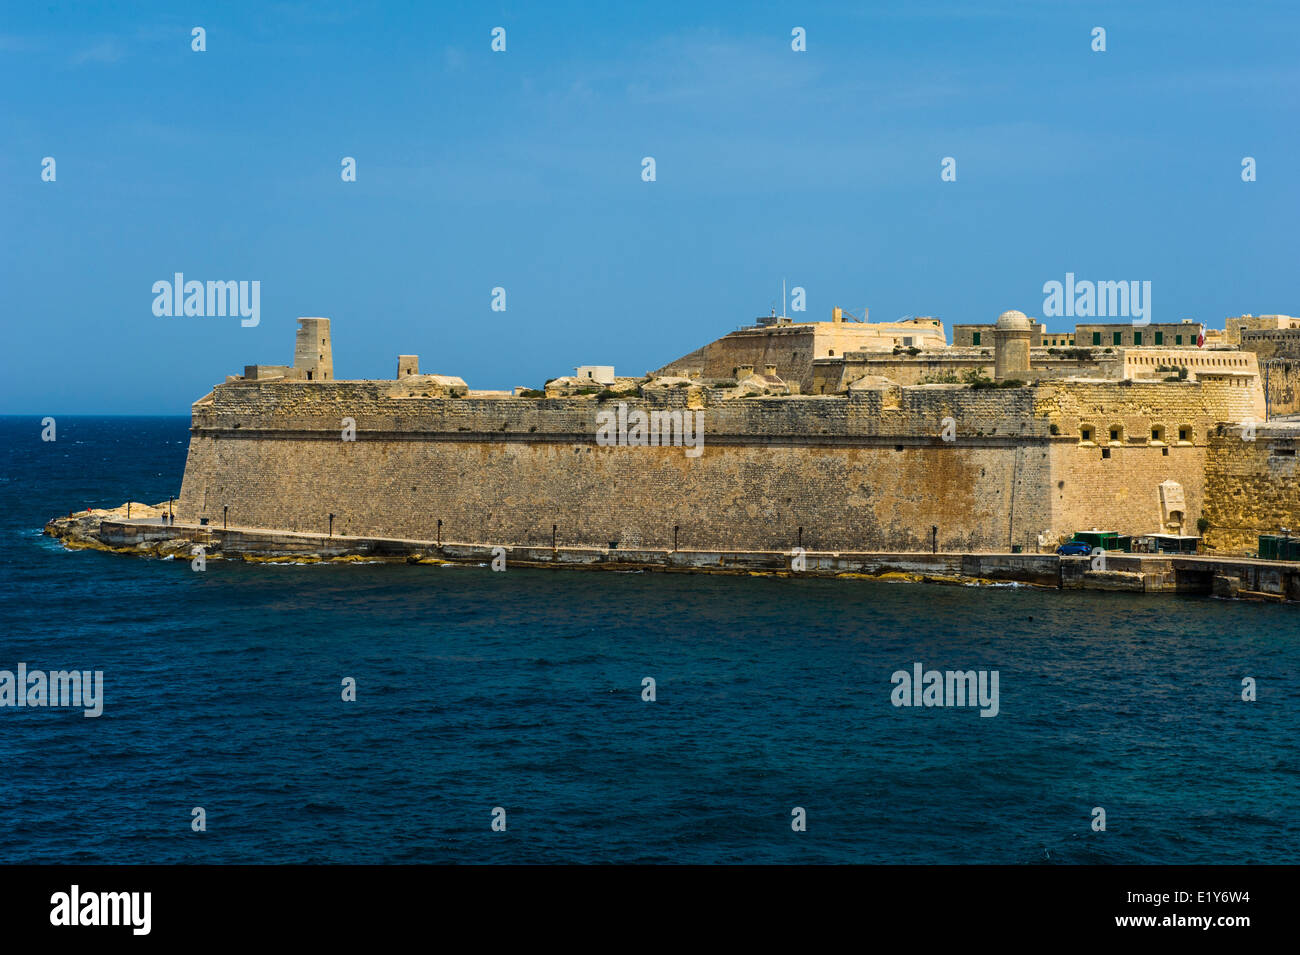 Fort St Elmo, Valletta, Malta. Stock Photo